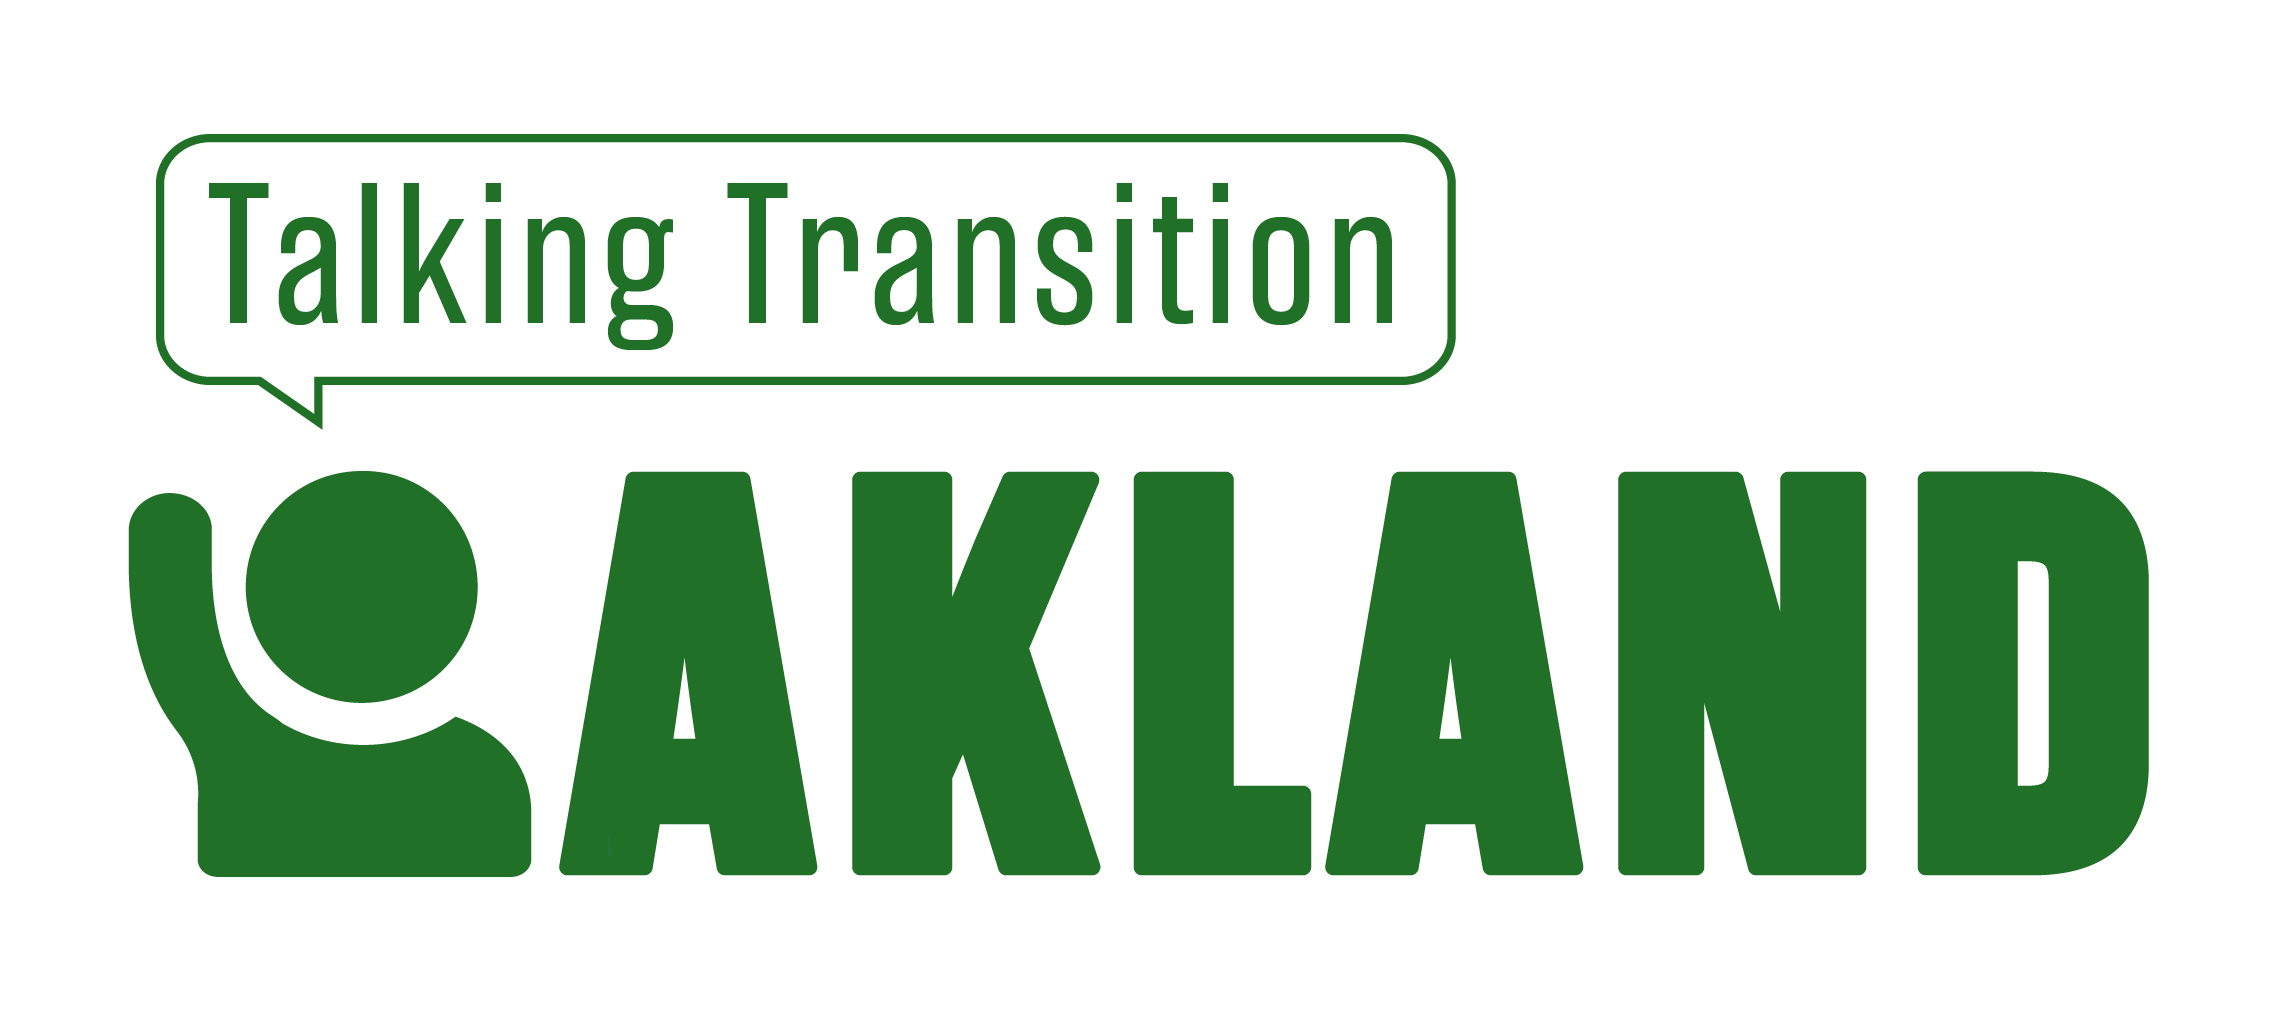 Talking Transition Oakland